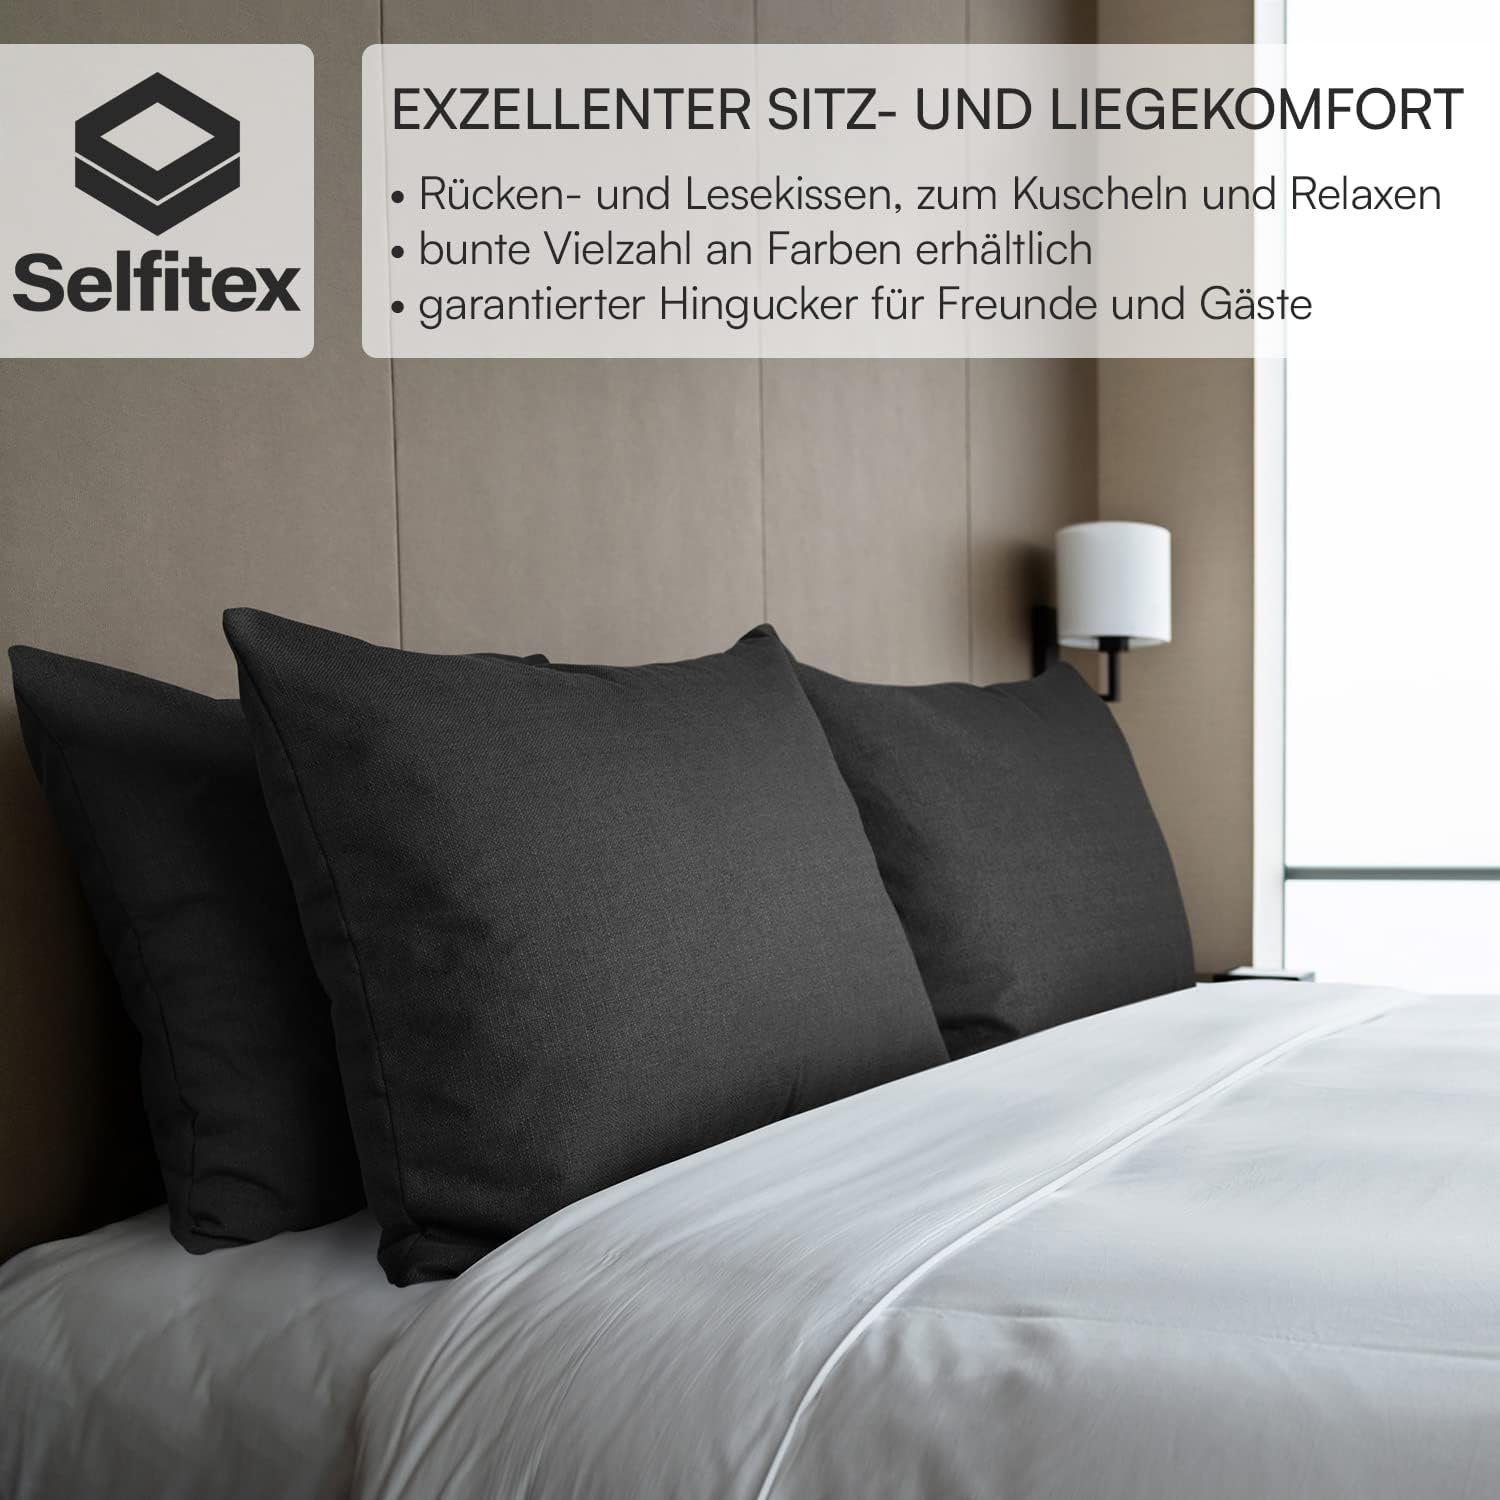 Selfitex Dekokissen XXL 60x80 inkl. Art für Rückenkissen, schwarz kuschelweiches als jeglicher Sofakissen, Couch, Lesekissen, Füllkissen Bett oder Polster